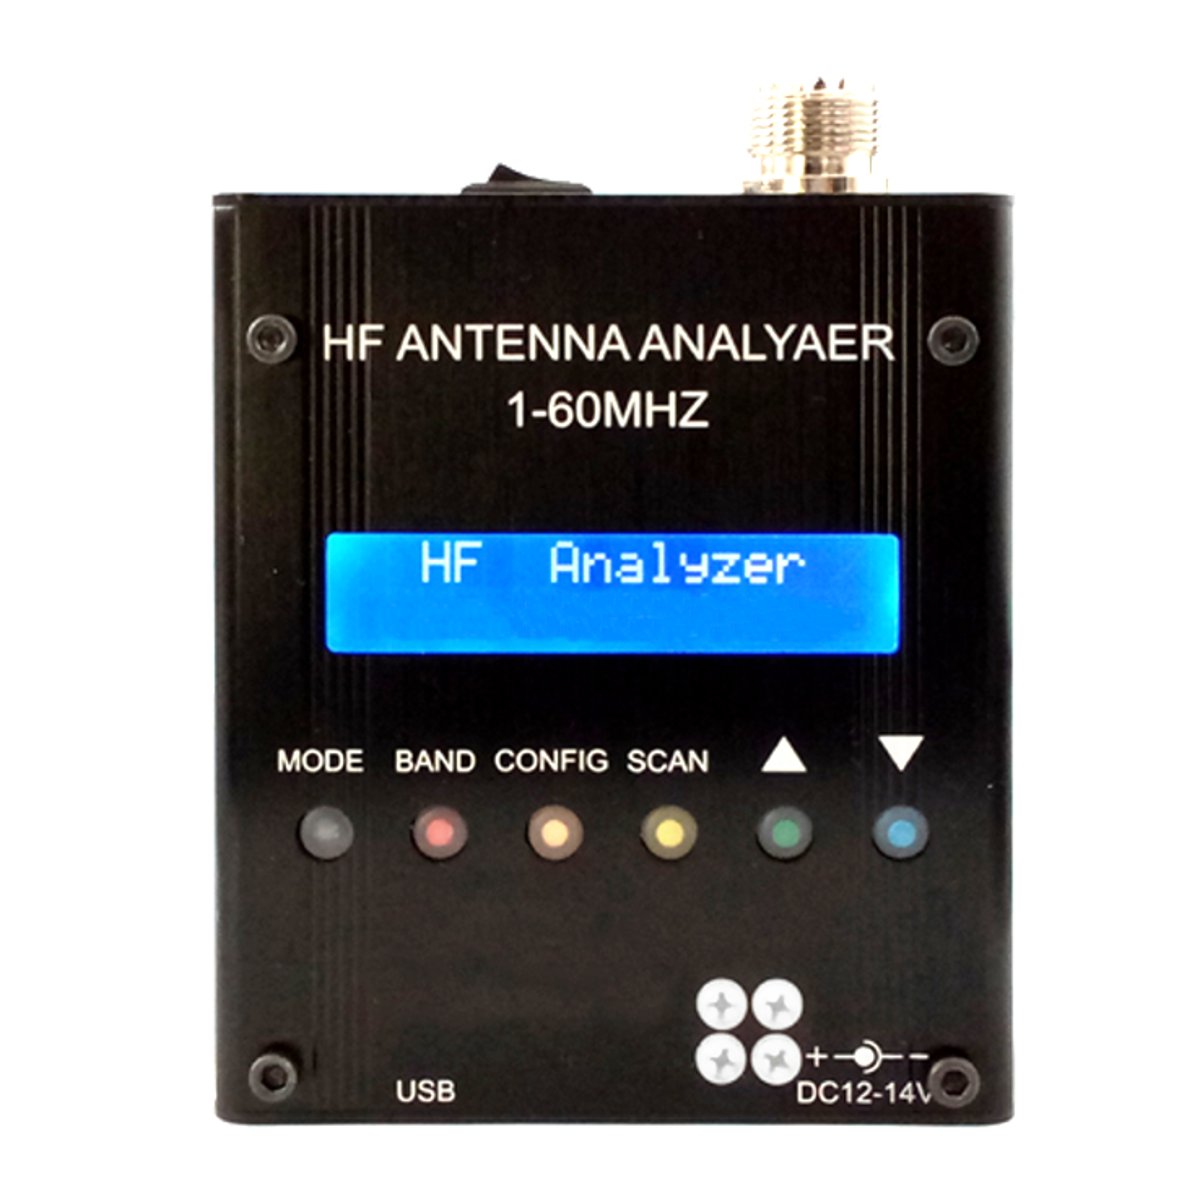 

MR300 Digital Shortwave Antenna Analyzer Meter Tester 1-60M For Ham Radio